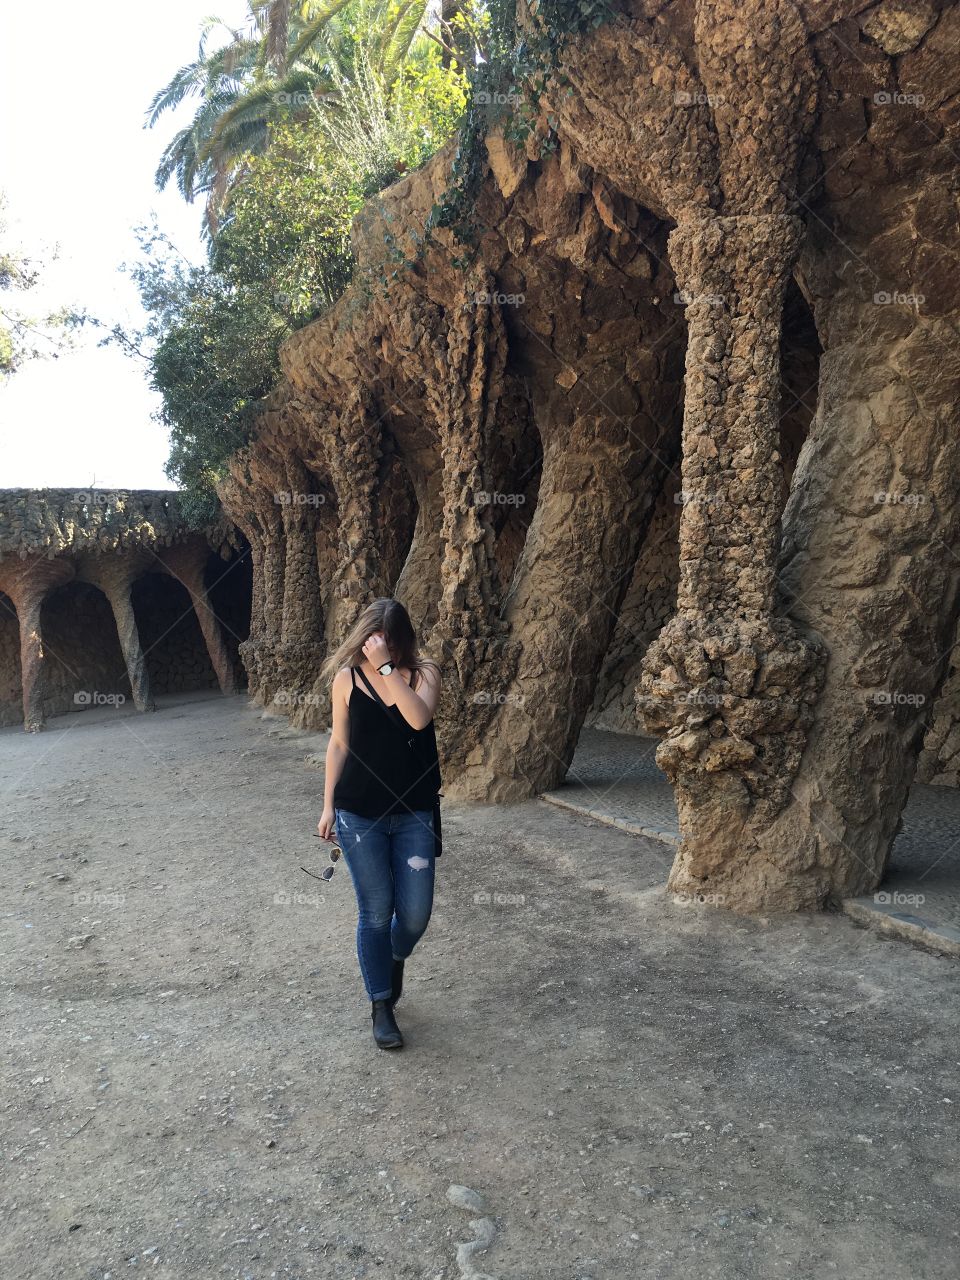 Exploring Gaudi's architecture 